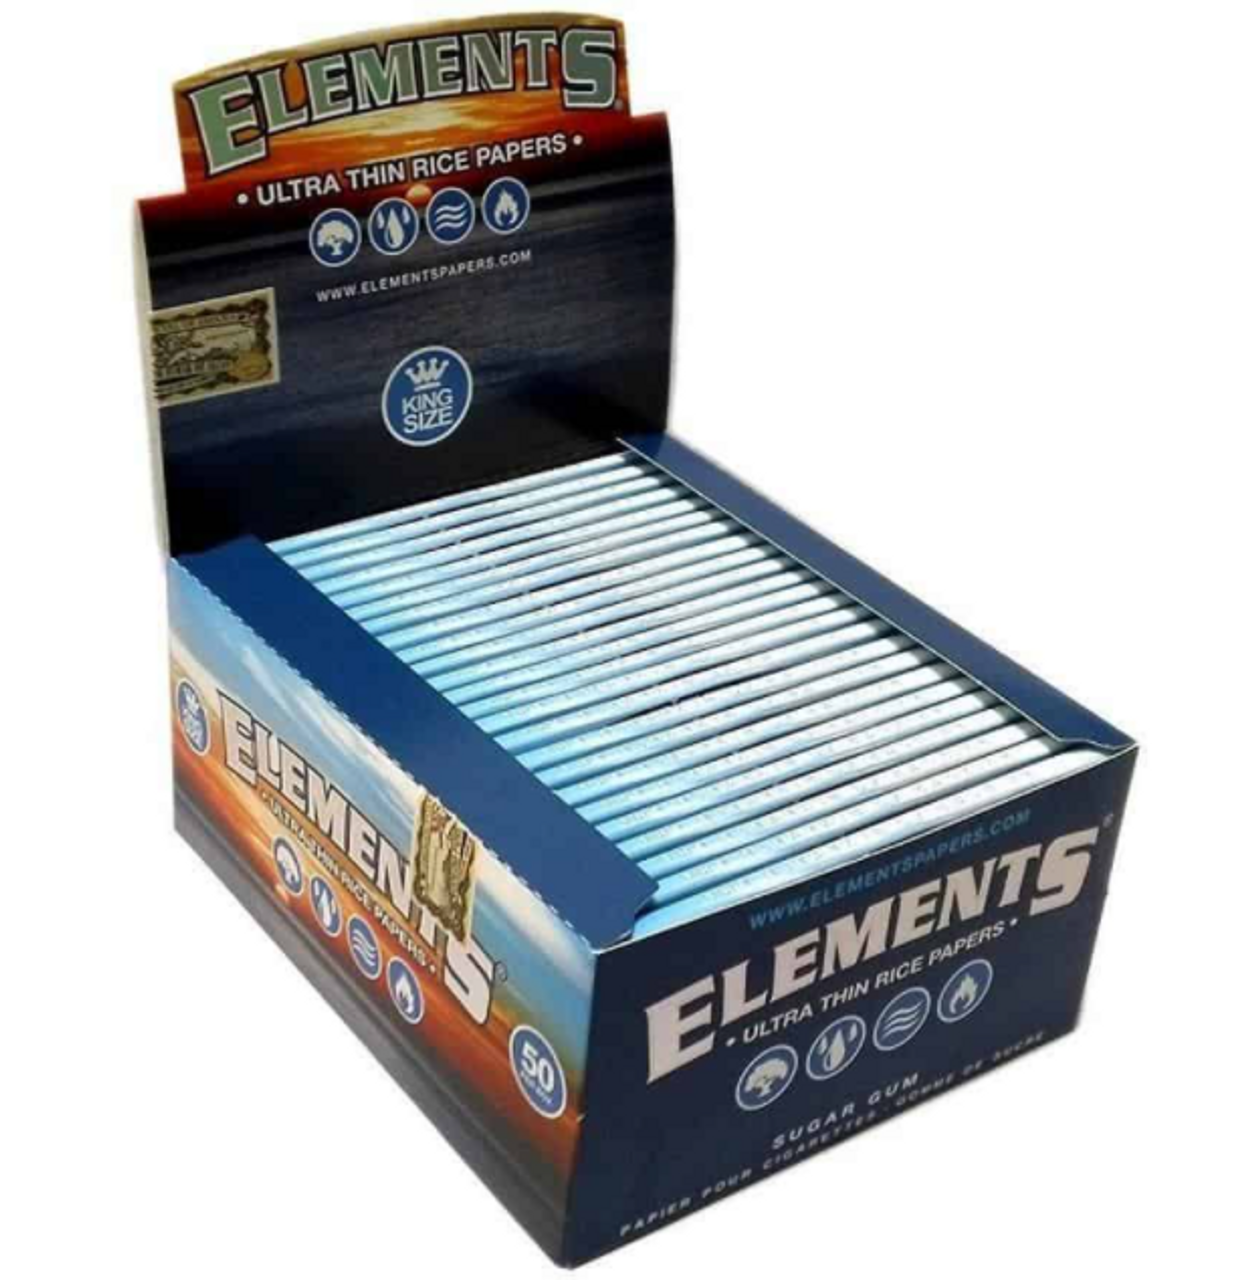 Zen Elements King Size Slim Cigarette Paper